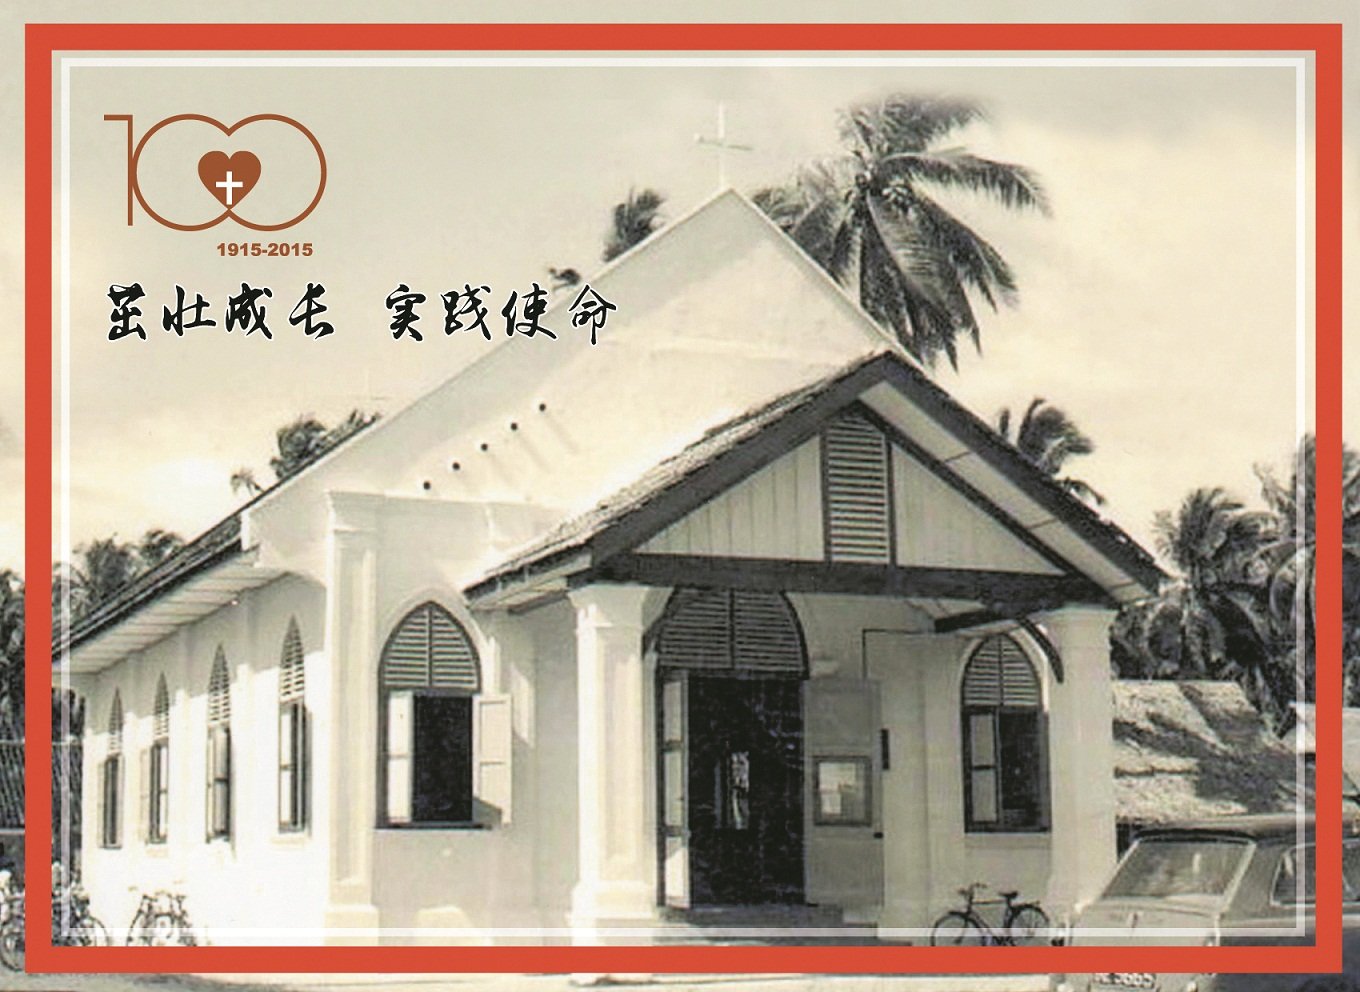 巴生港口华人卫理公会早期的外观。